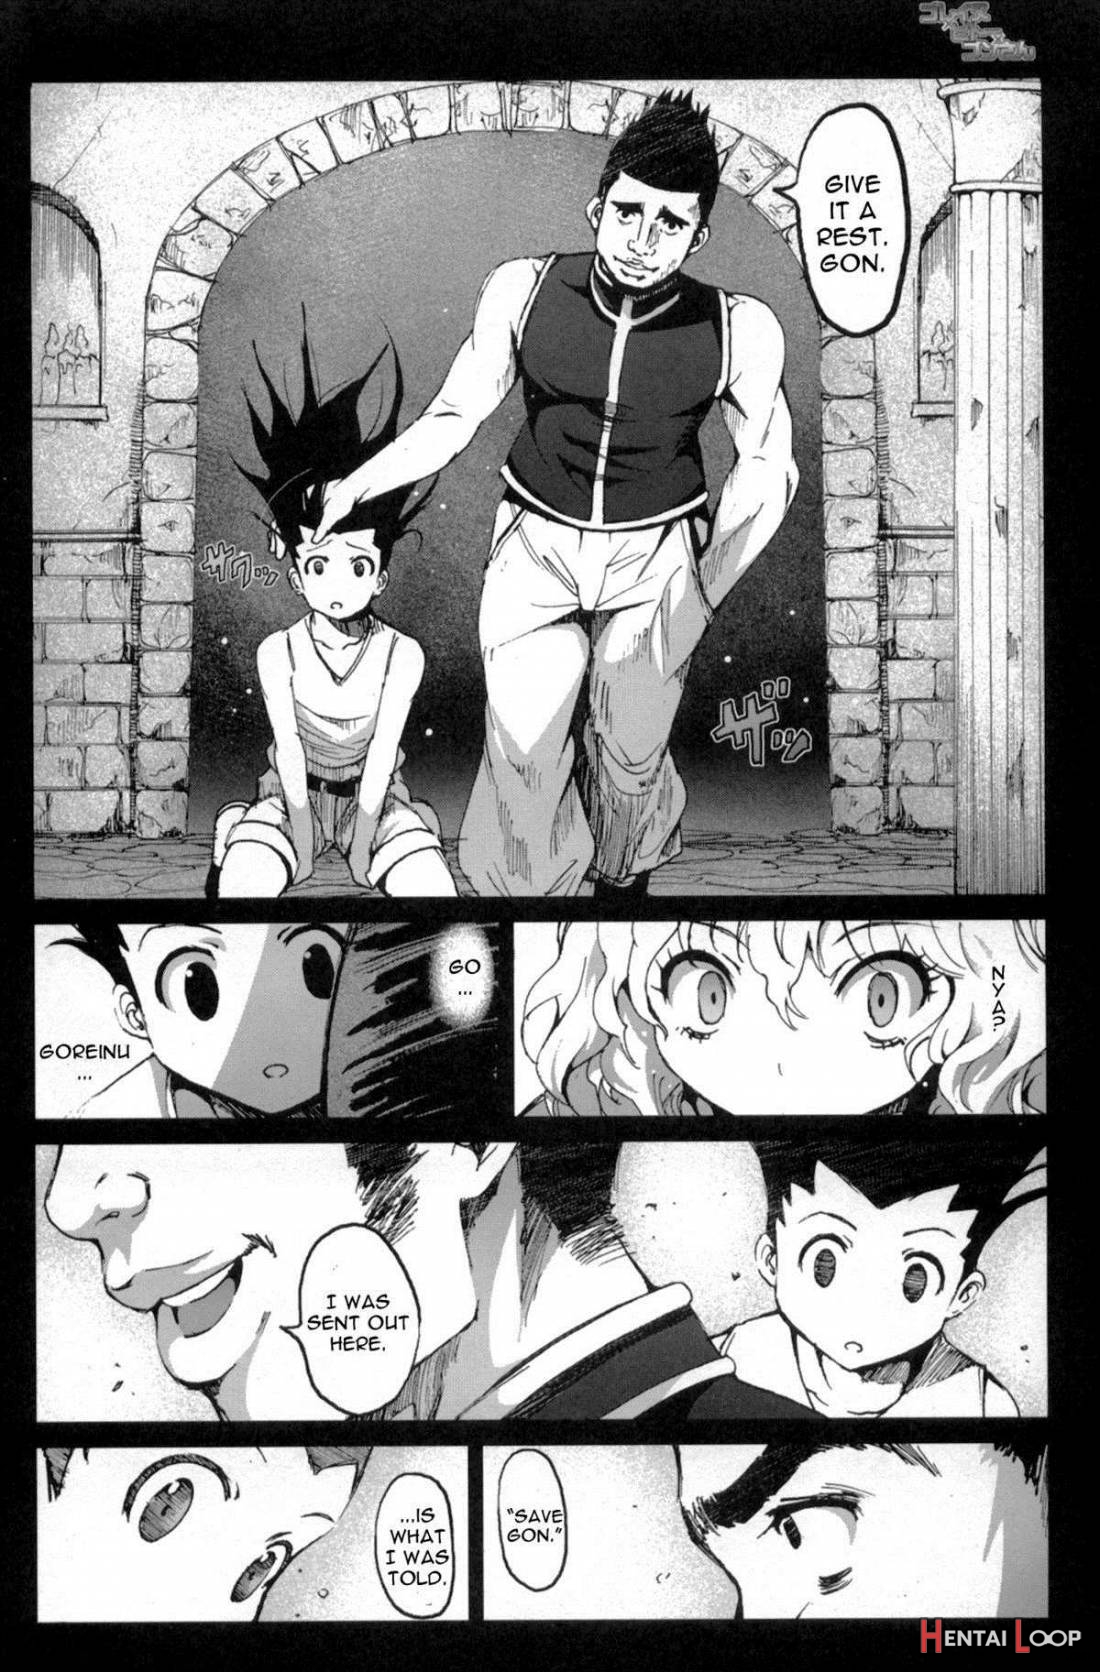 Goreinu X Pitou X Gon-san page 3